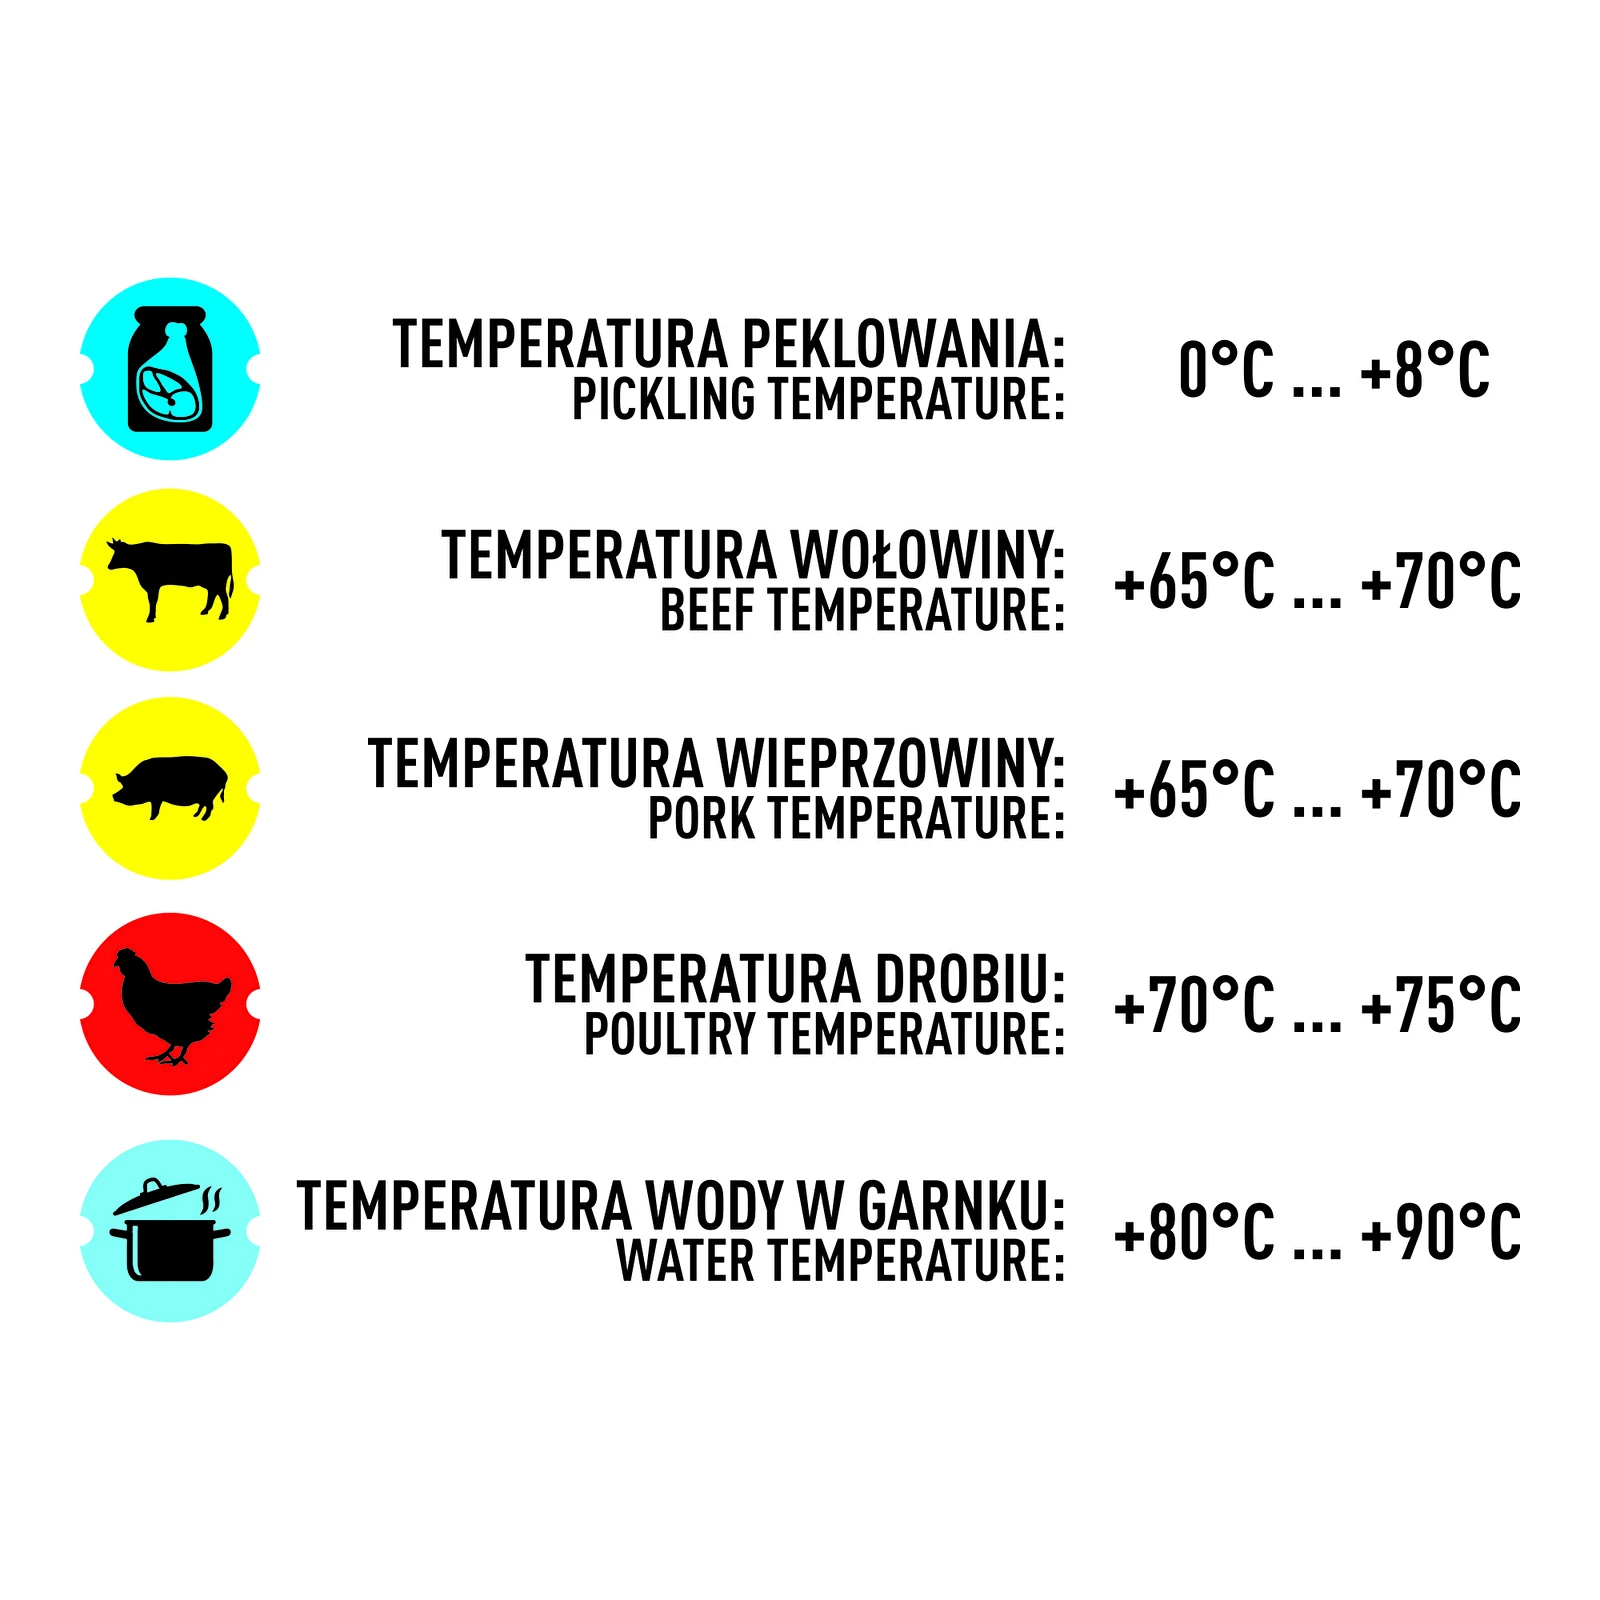 Bengt EK Design 20 Meat Thermometer 0-100 °C